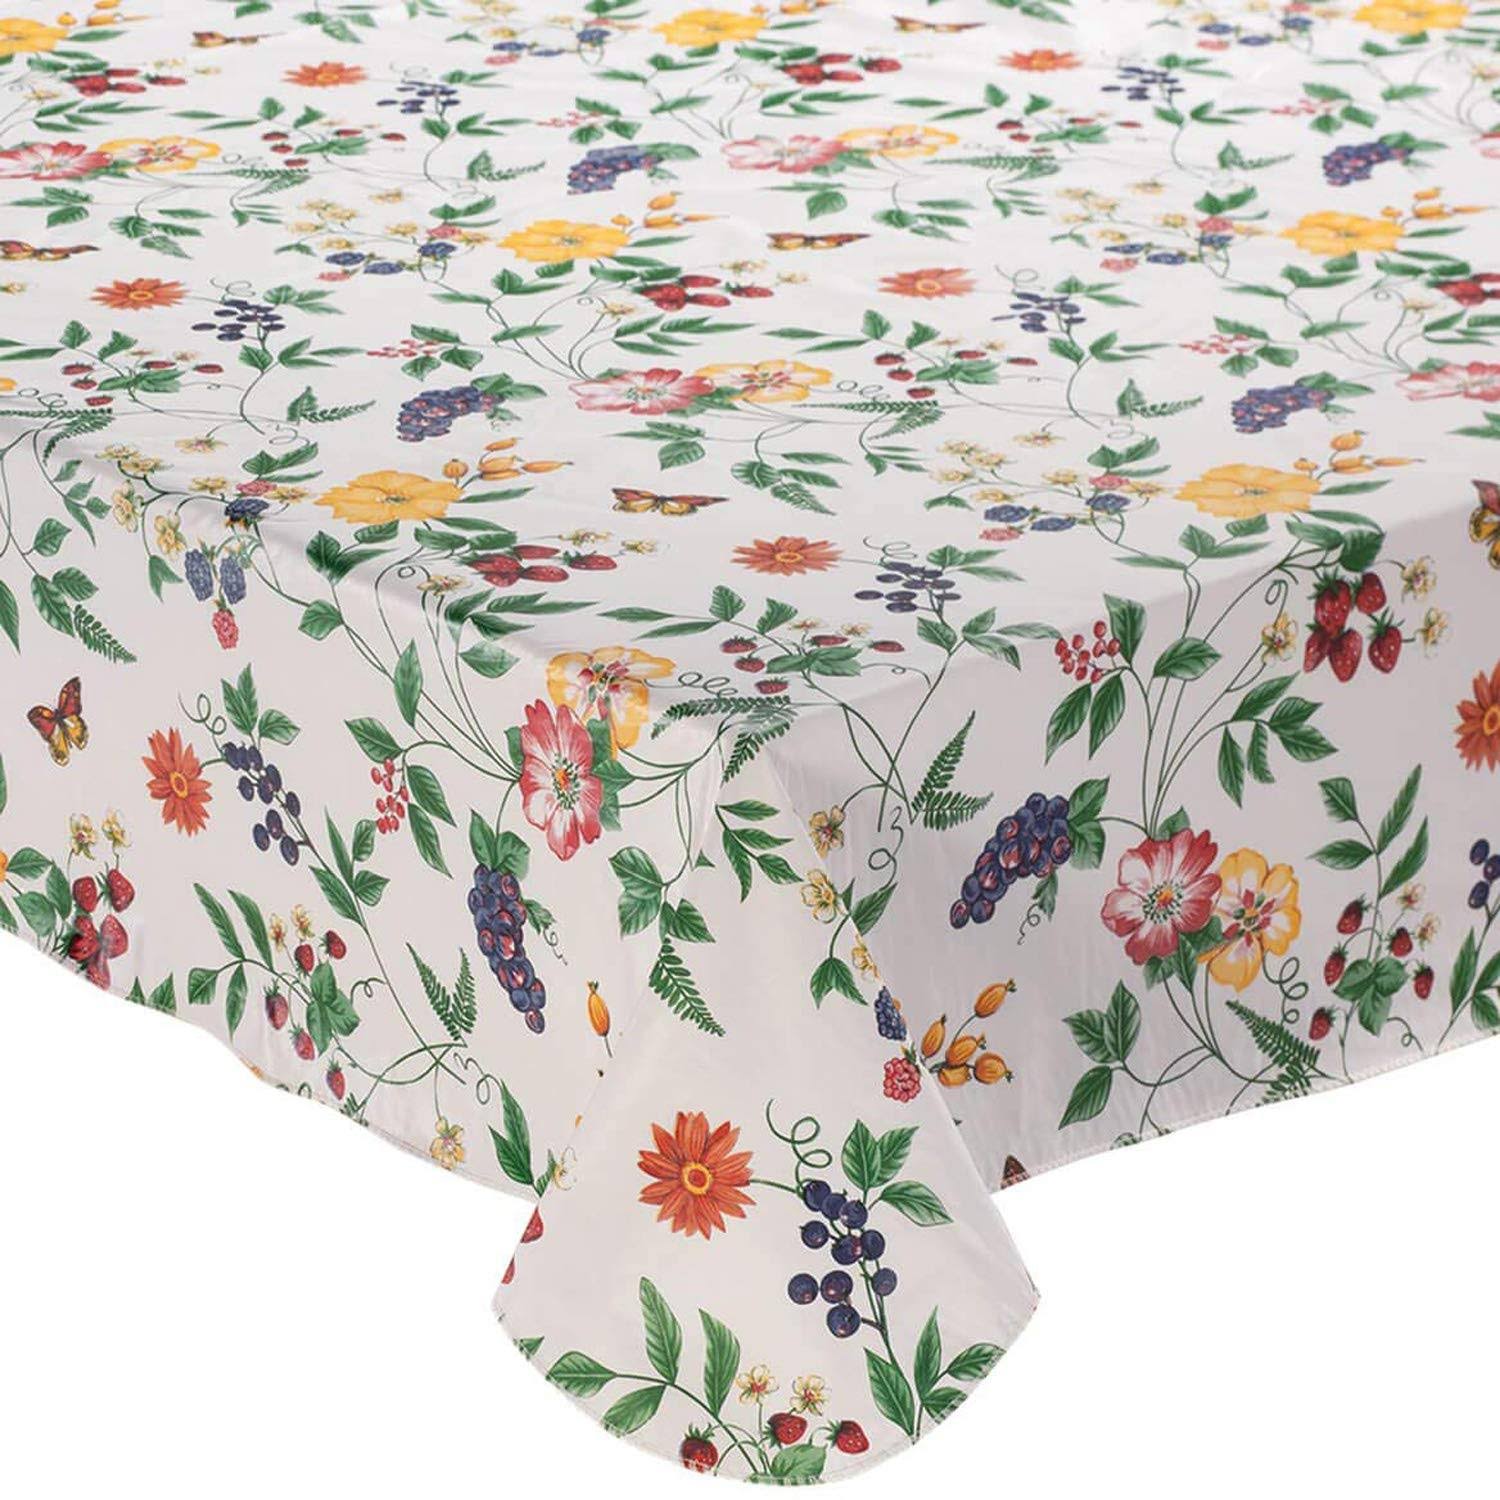 Lintex Enchanted Garden Vinyl Tablecloth White